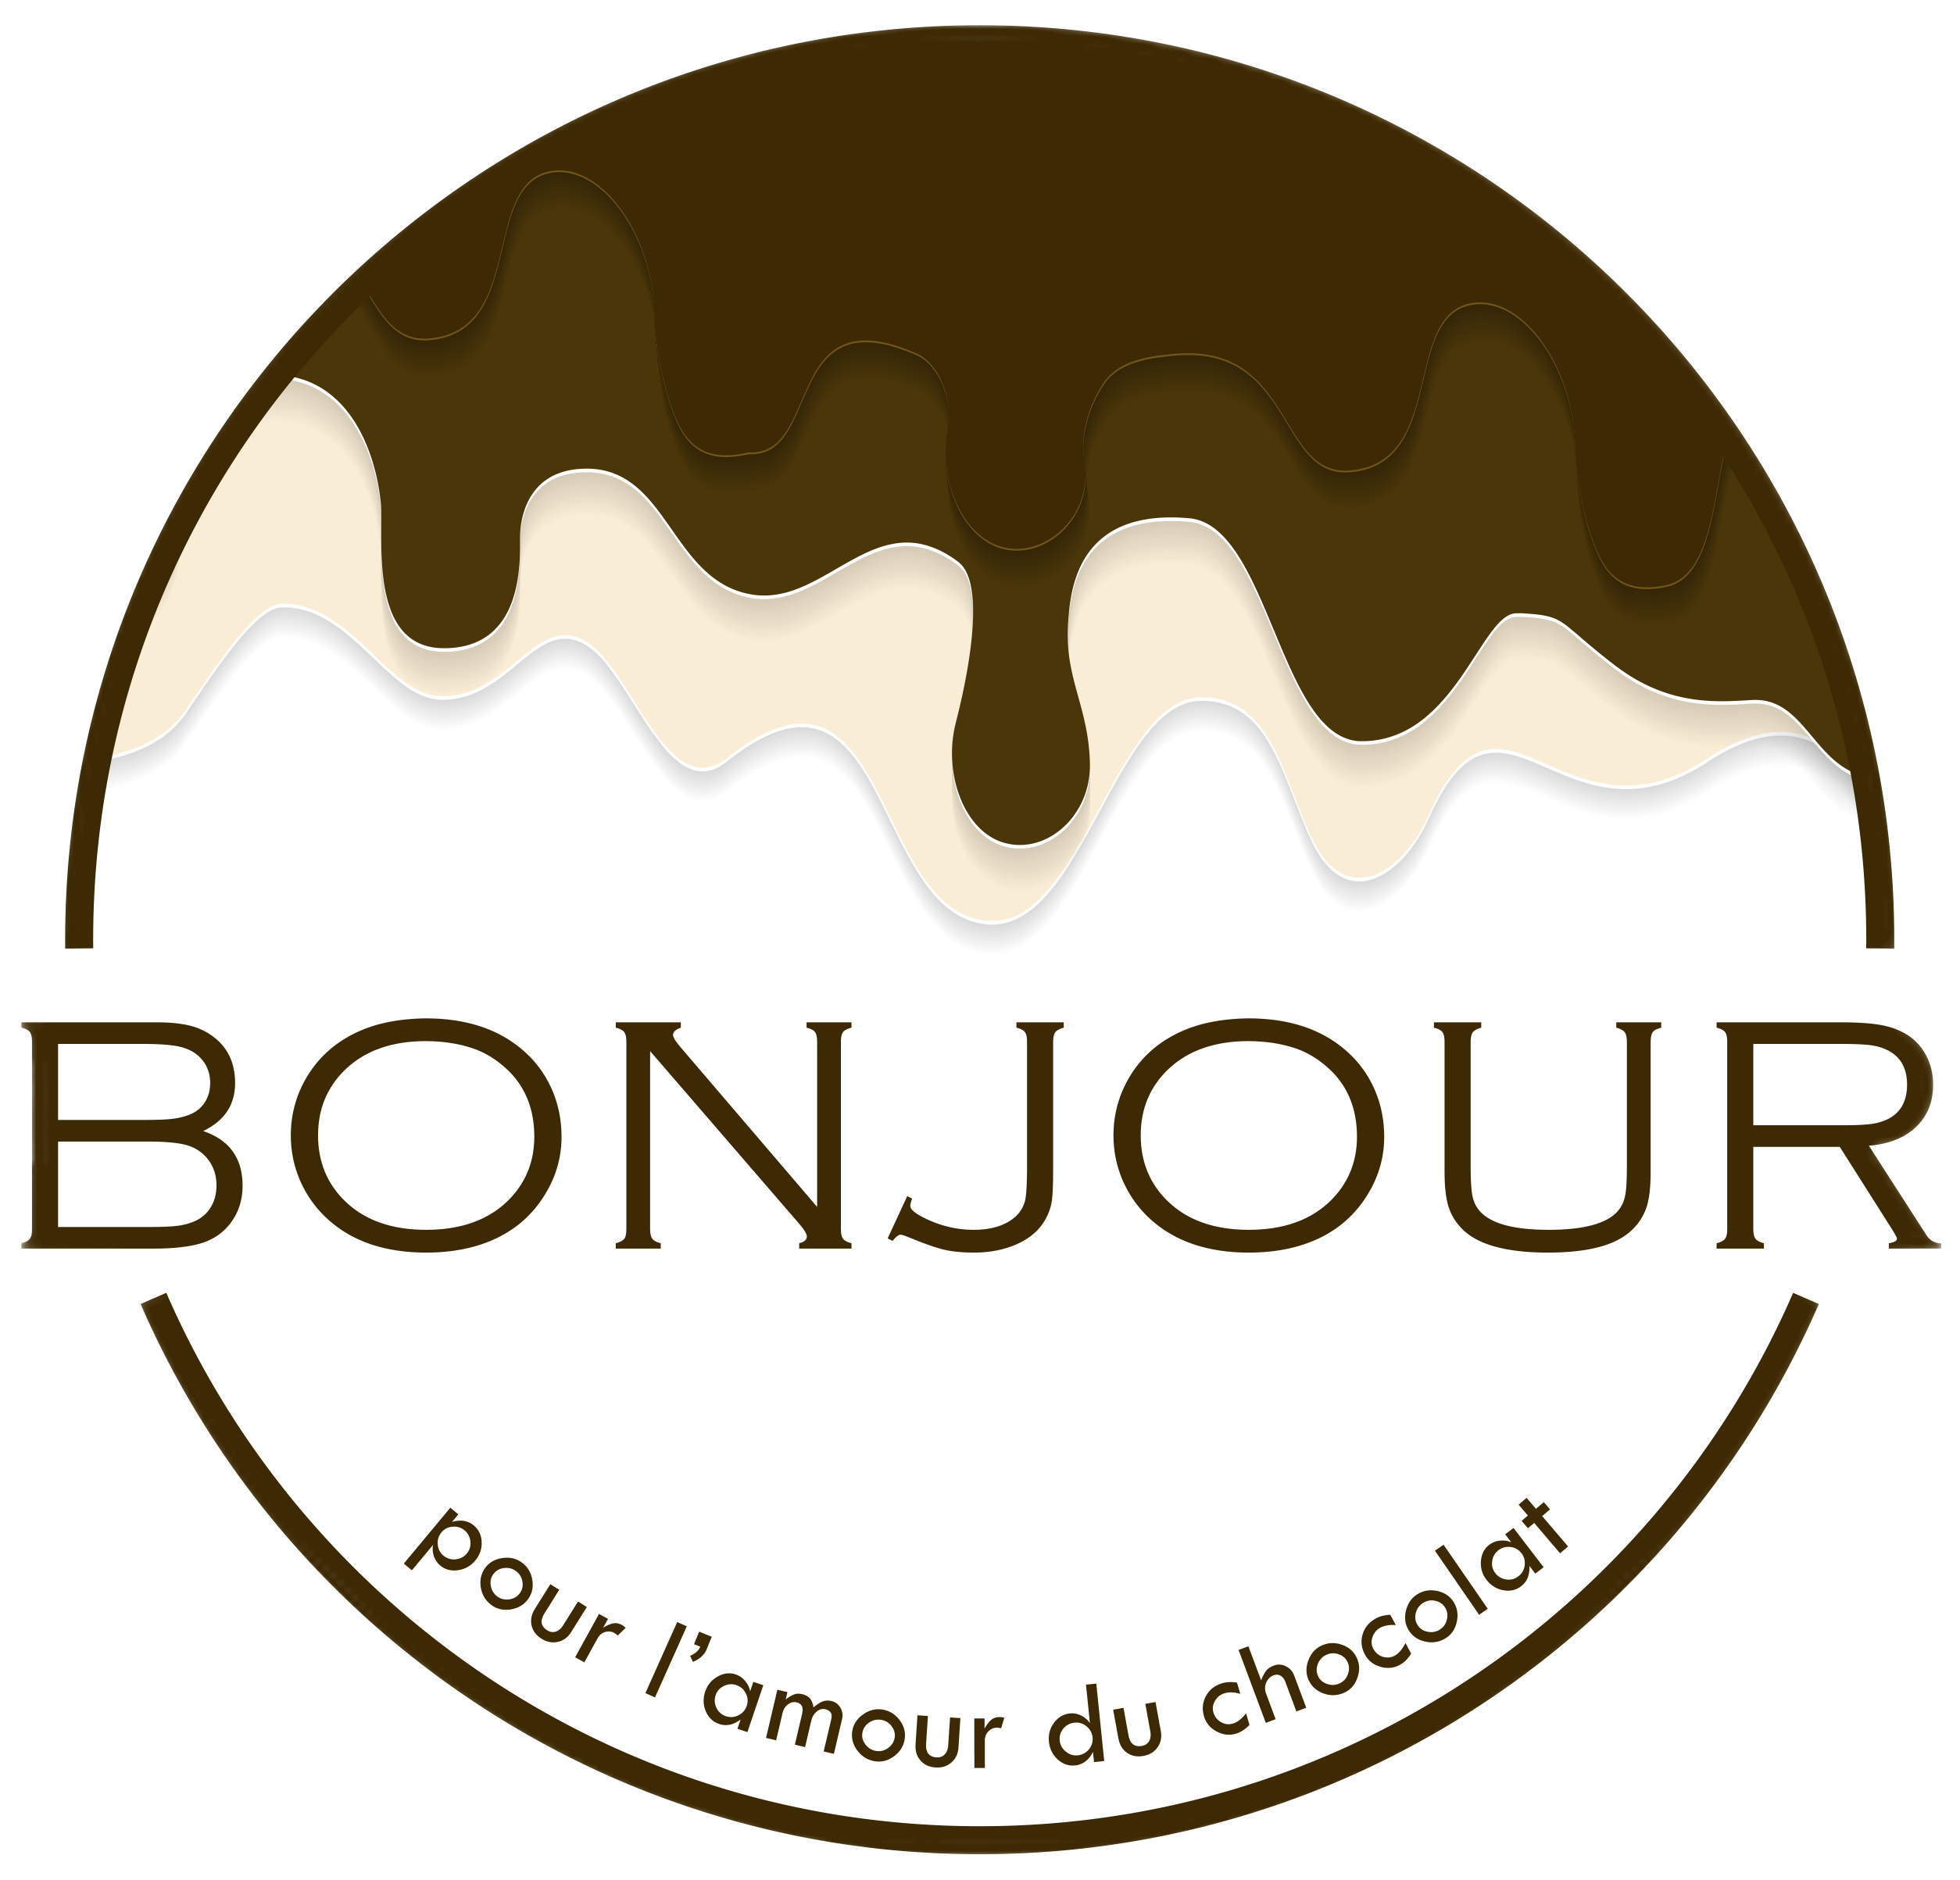 Bonjour official logo